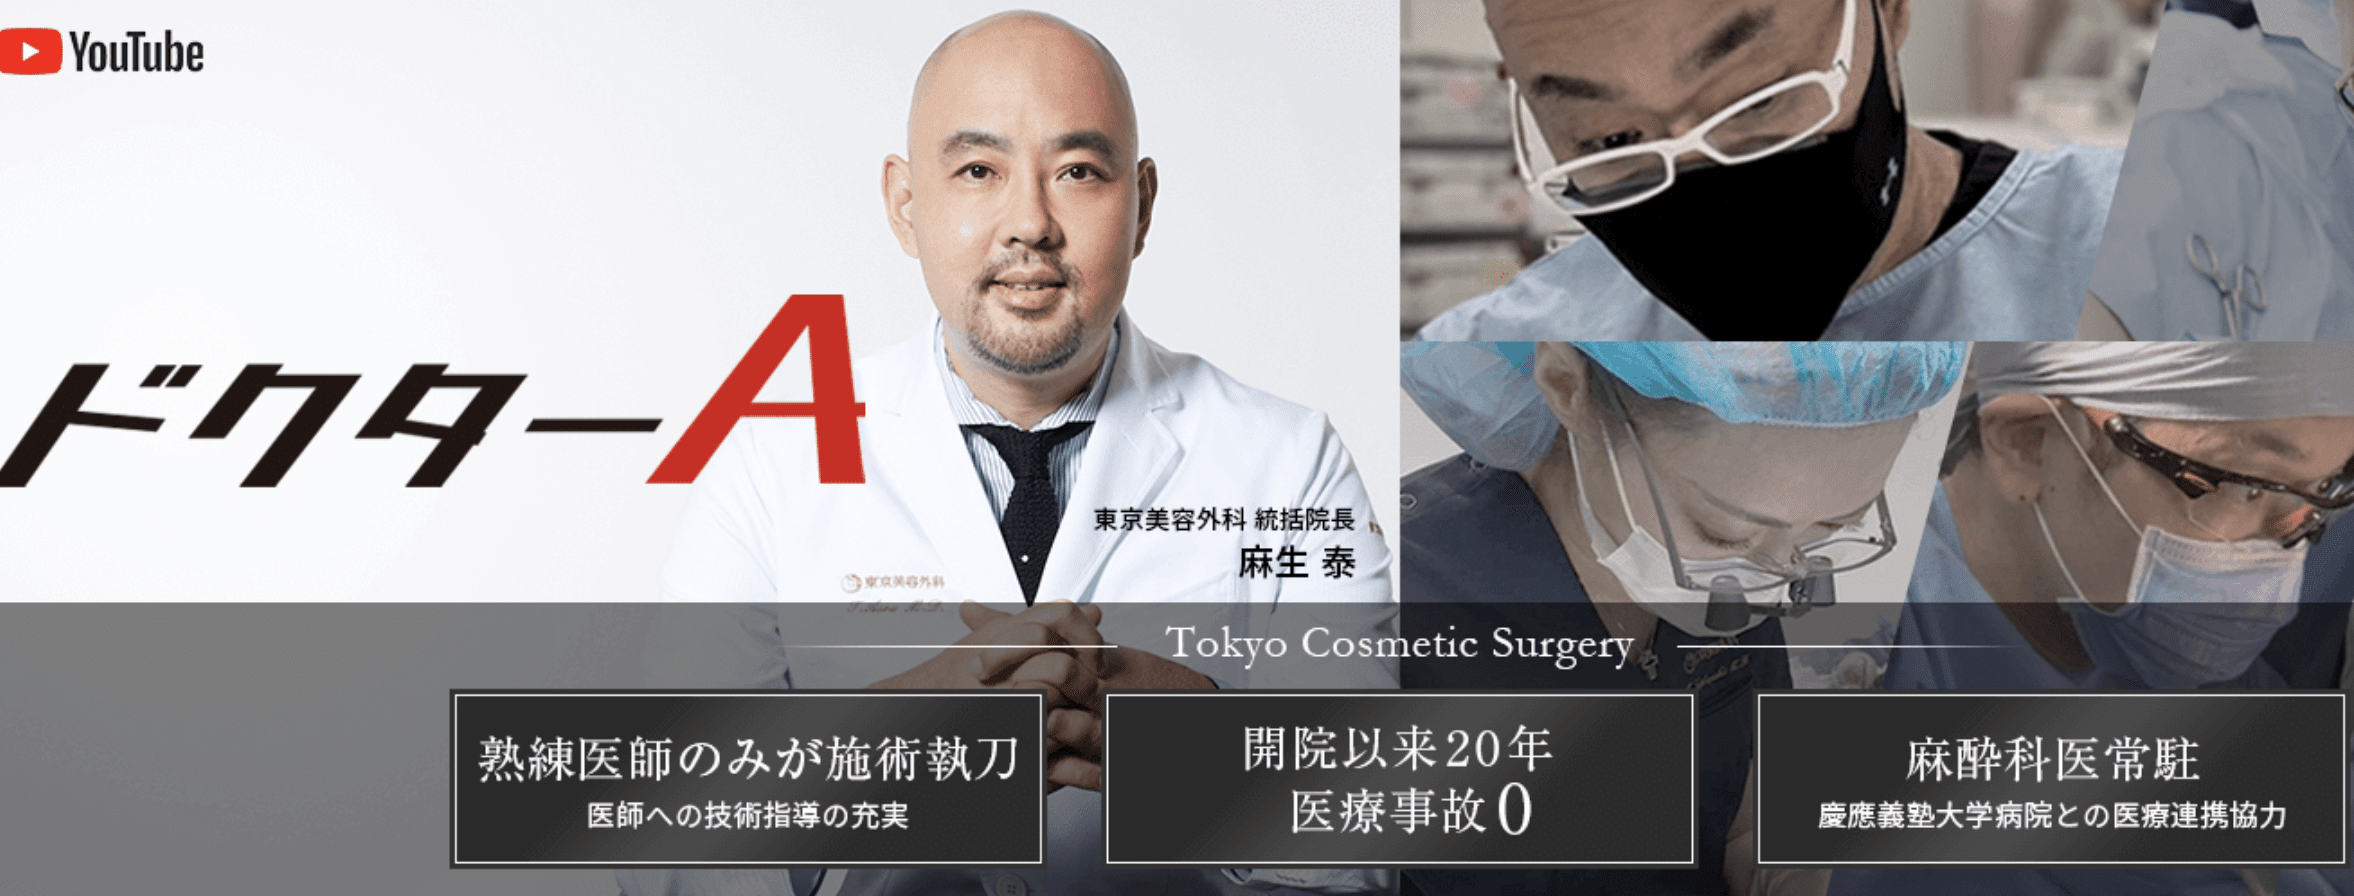 東京美容外科はベテラン専門医が多数在籍